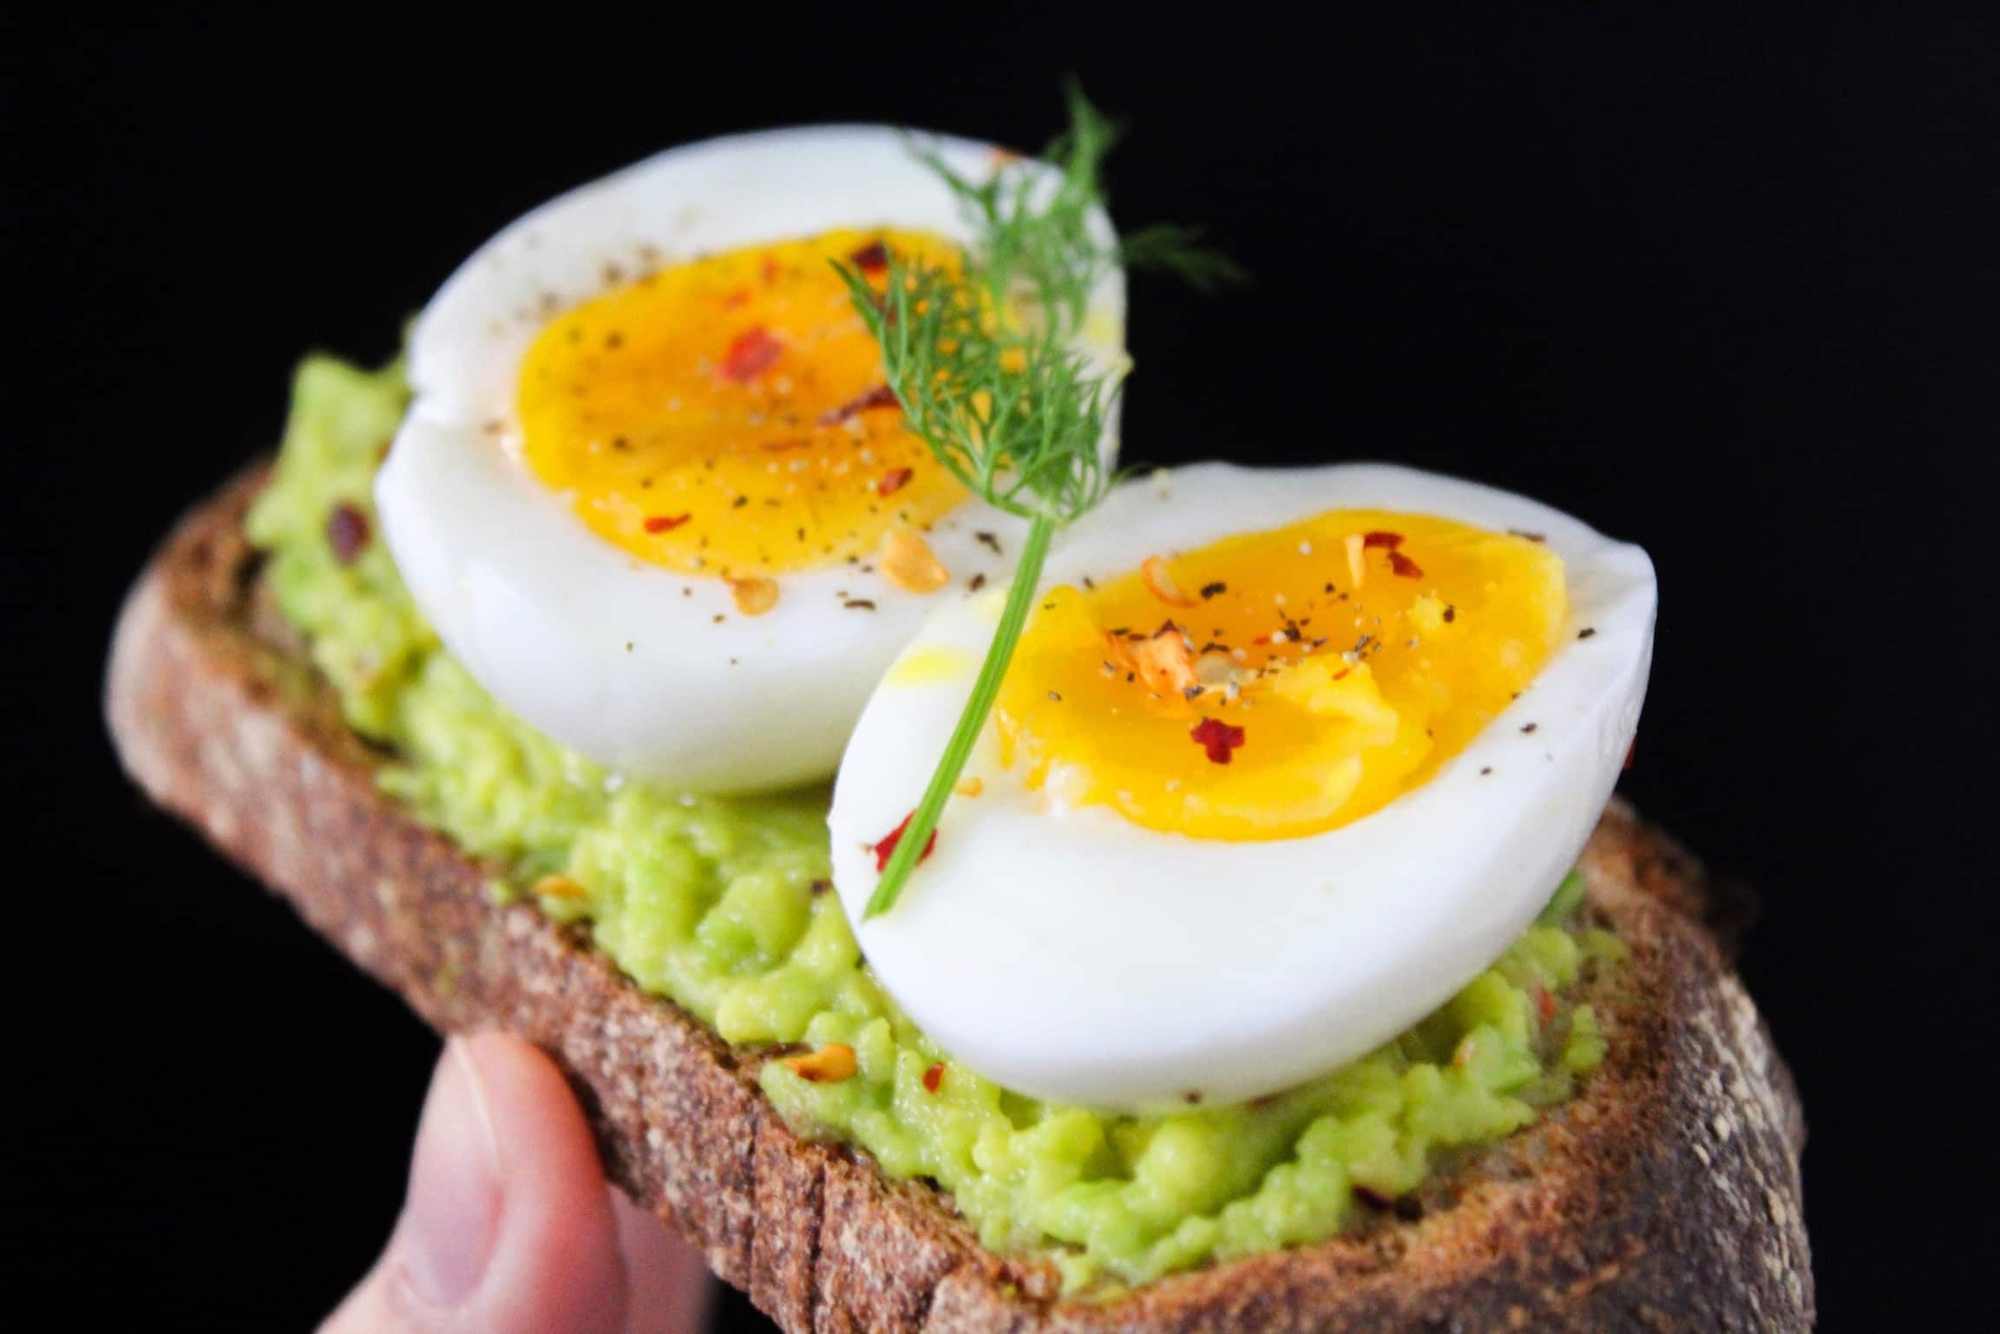 Bạn có thể thay đổi phương pháp chế biến hoặc kết hợp thực phẩm lành mạnh với trứng vịt để hạn chế tăng cân